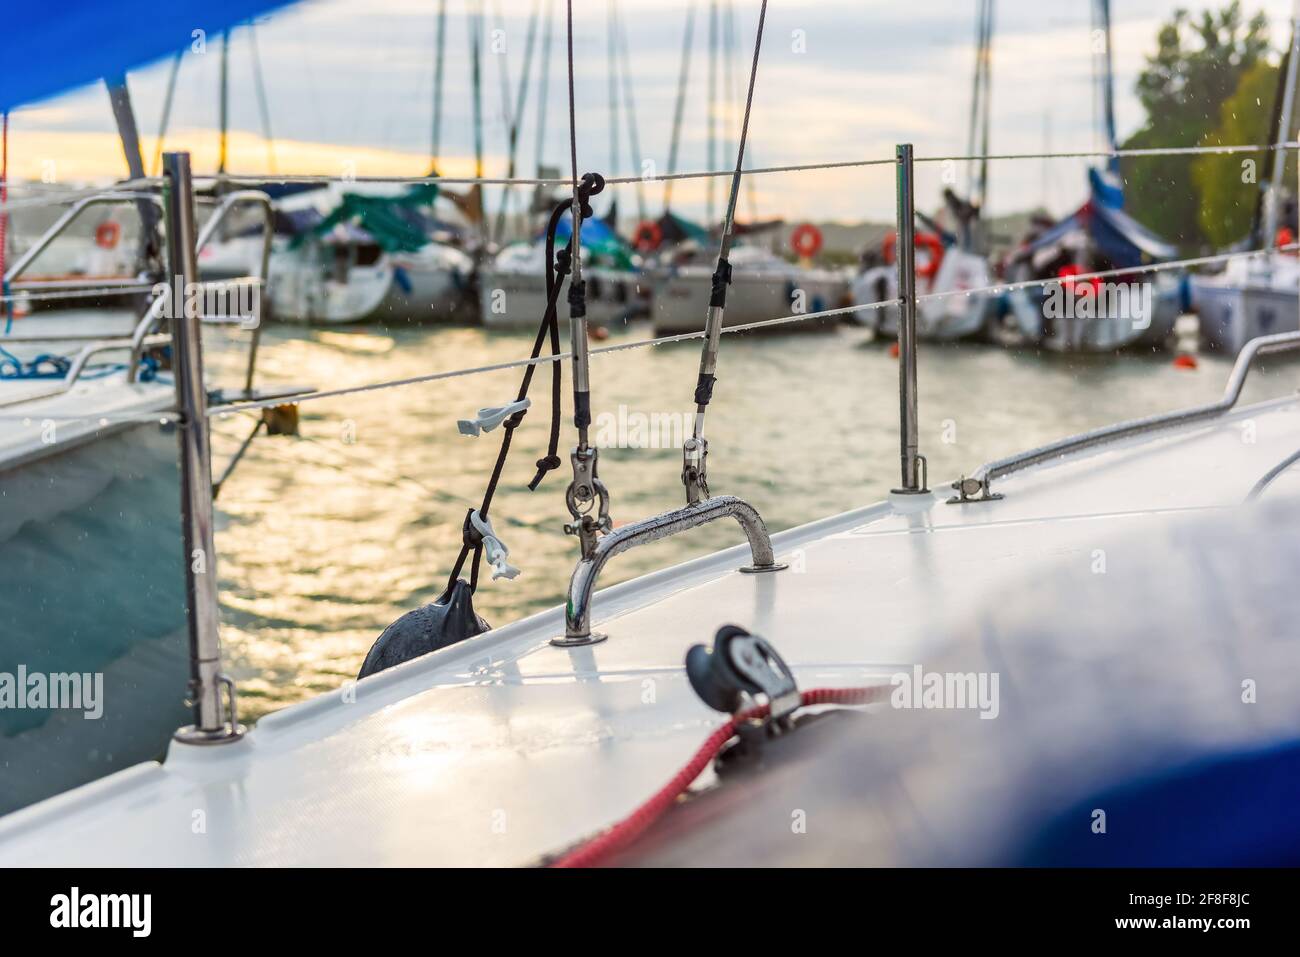 Yachten liegen in einem Hafen. Segelboote im Dock. Sommerferien, Kreuzfahrt, Erholung, Sport, Regatta, Freizeitaktivitäten, Service, Tourismus Stockfoto